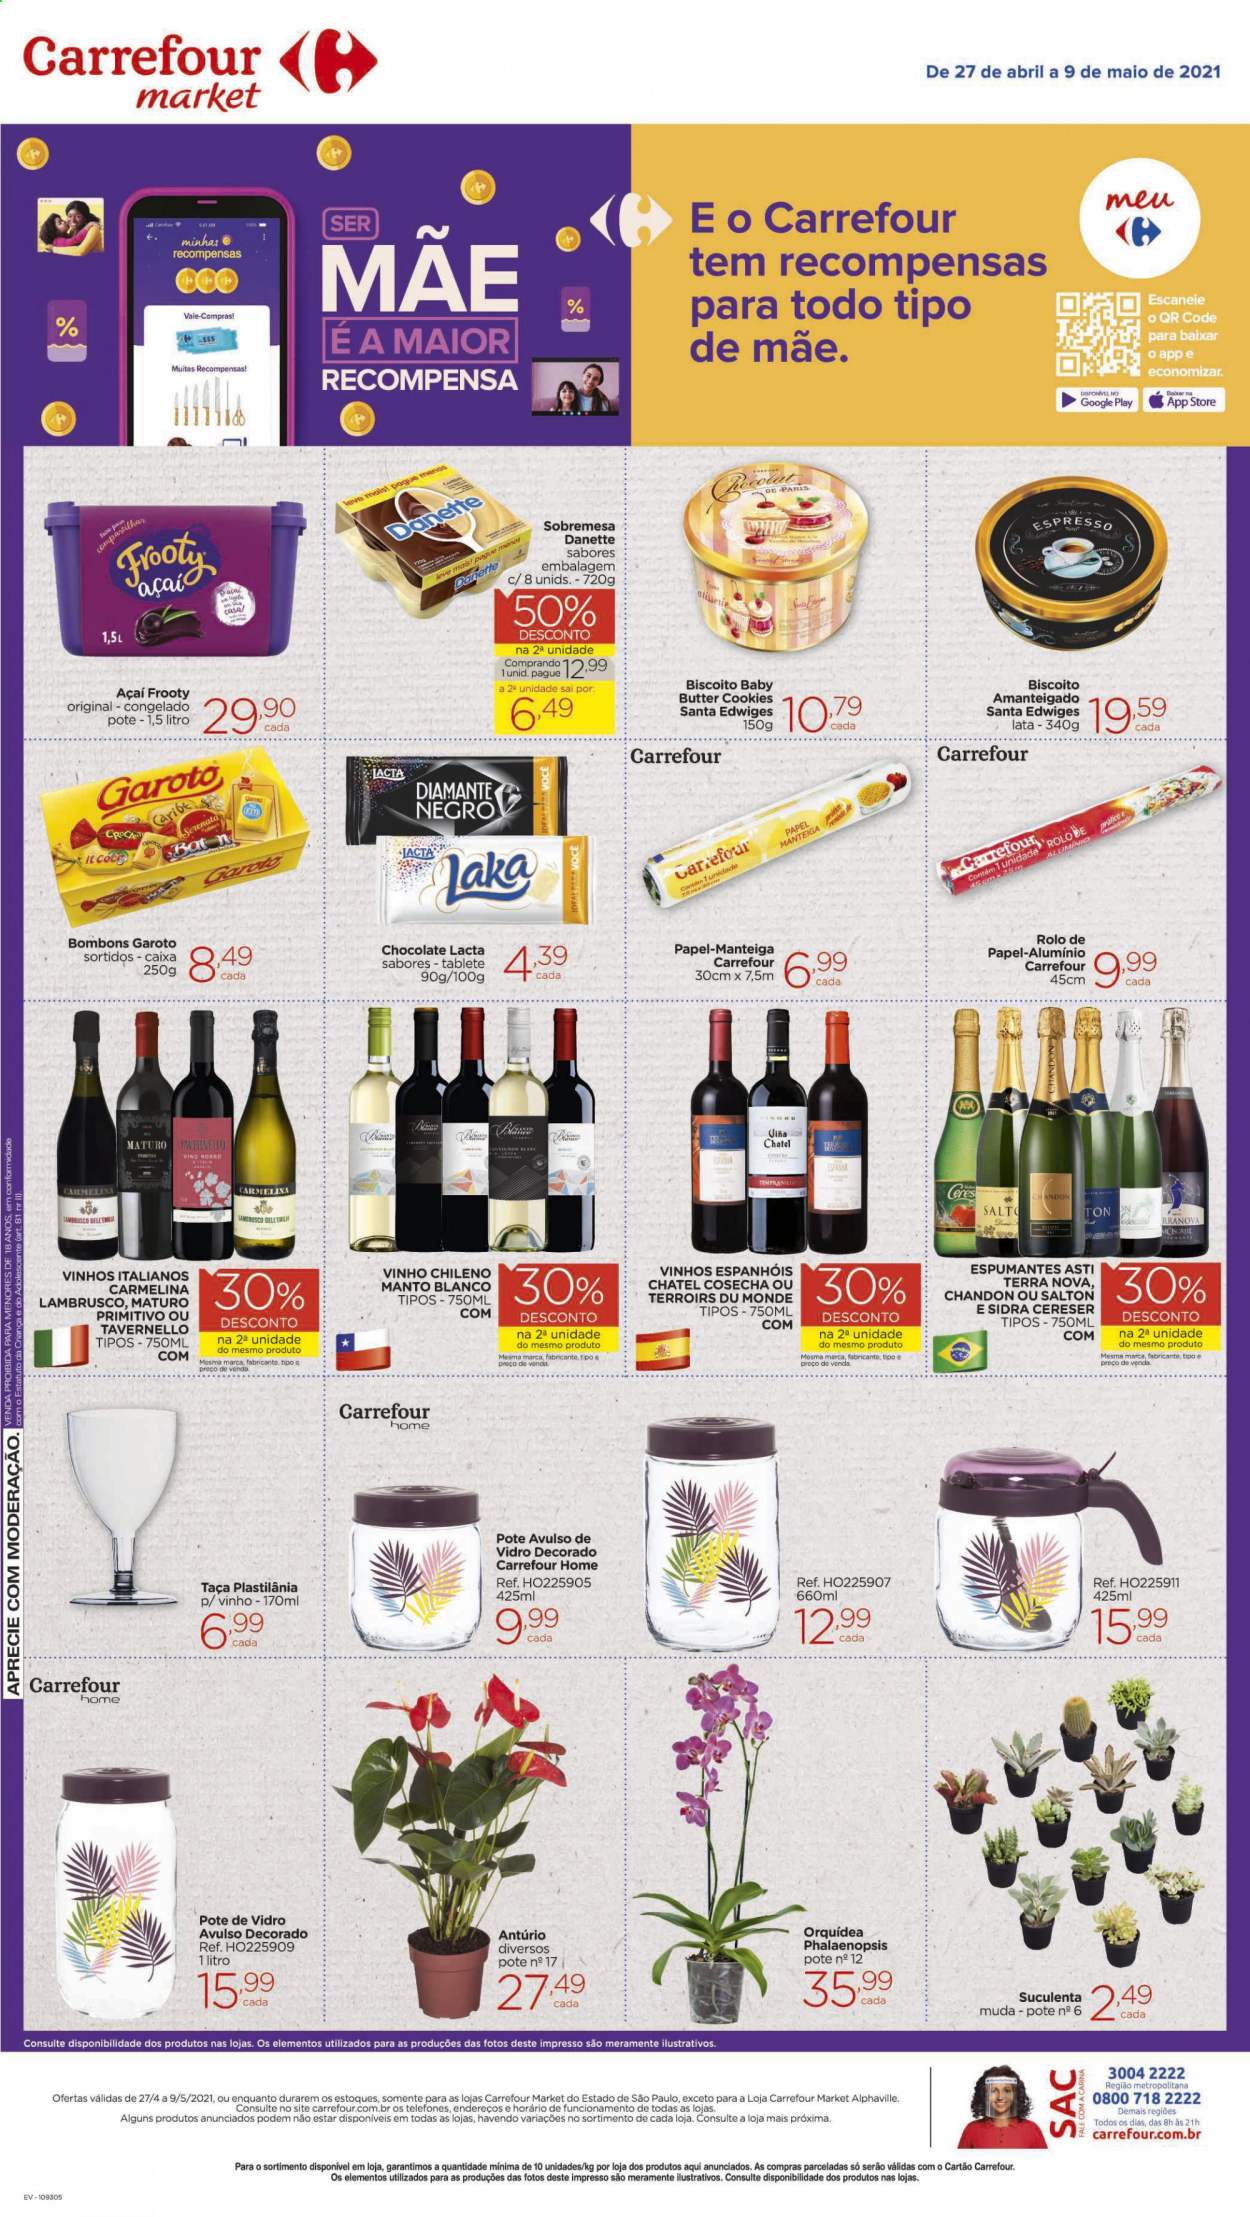 thumbnail - Folheto Carrefour Market - 27/04/2021 - 09/05/2021 - Produtos em promoção - açai, sobremesa, Danette, manteiga, chocolate, biscoito, bombom, vinho, vinho chileno, lambrusco, Salton, sidra, taça. Página 2.